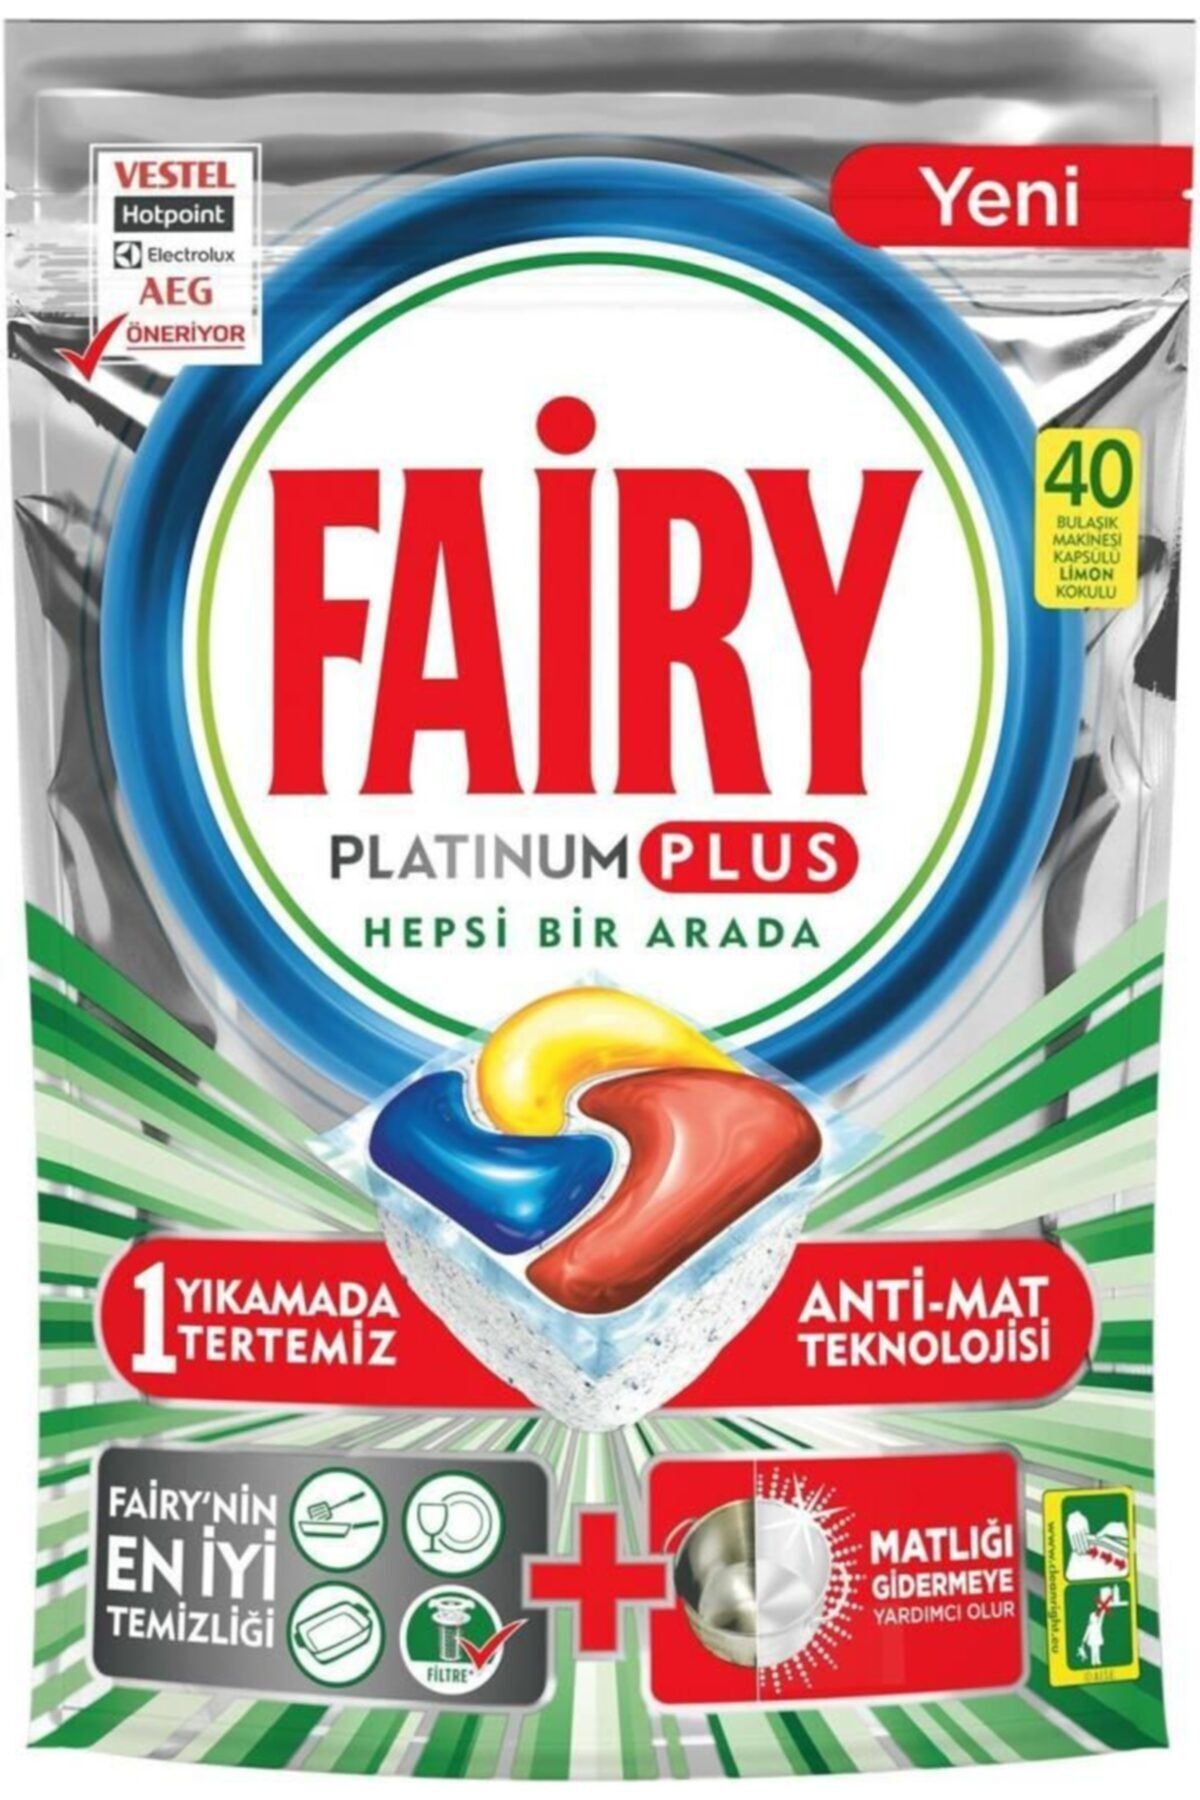 Fairy Platinum Plus Hepsi Bir Arada Bulaşık Makinesi Deterjanı Kapsülü 40'lı 4 Paket 160 Yıkama